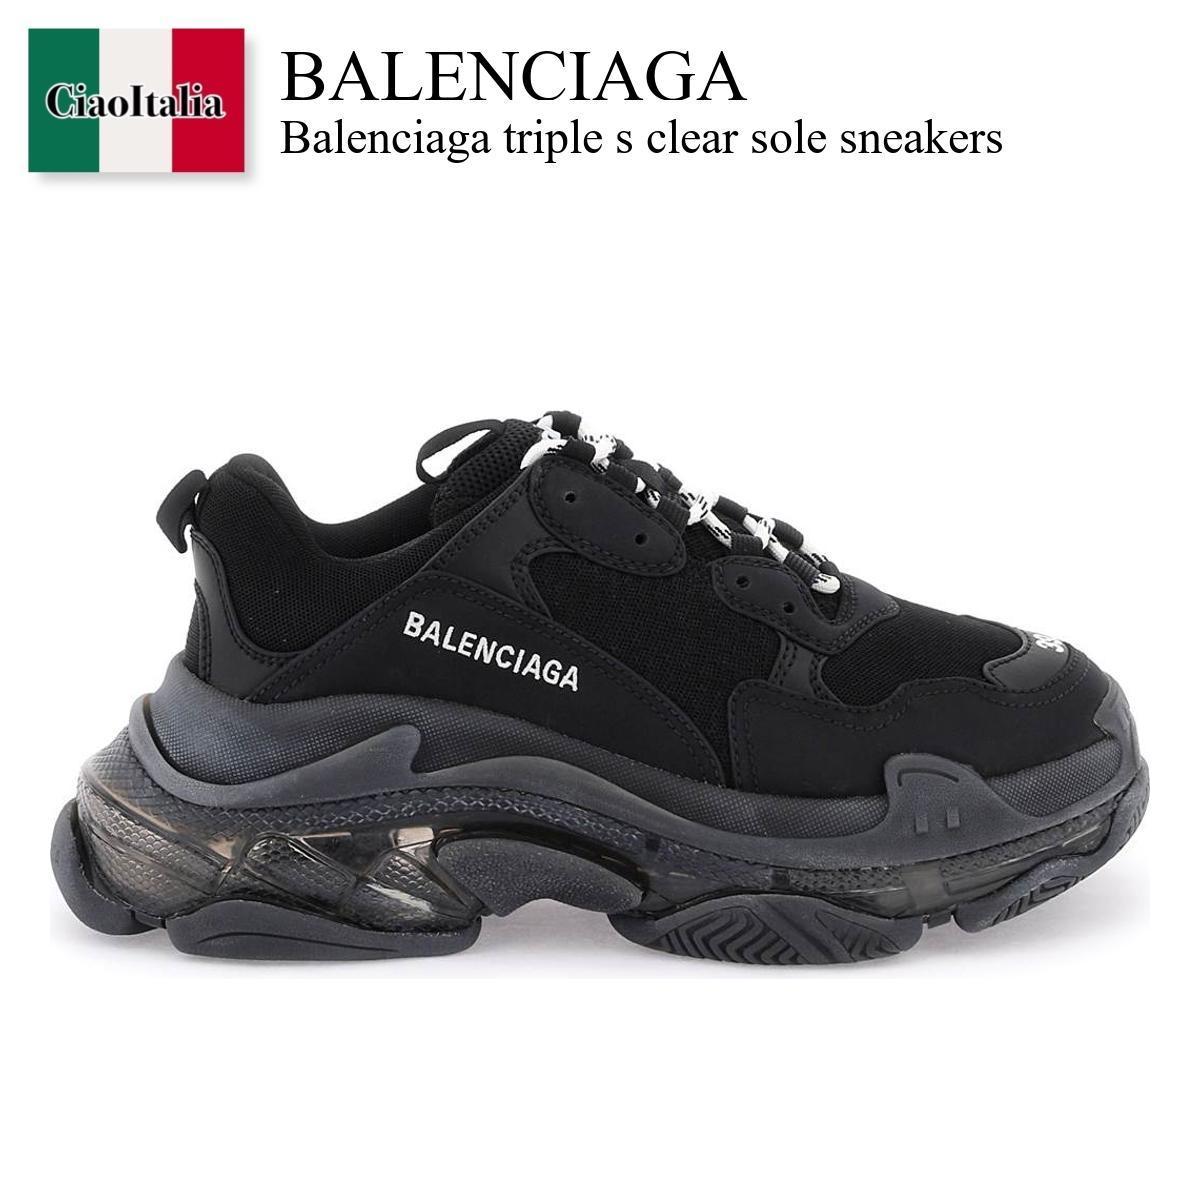 バレンシアガ / Balenciaga Triple S Clear Sole Sneakers / 544351 W2FB1 / 544351 W2FB1 1000 / 544351W2FB11000 / 544351W2FB1 / スニーカー / 「正規品補償」「VIP価格販売」「お買い物サポート」